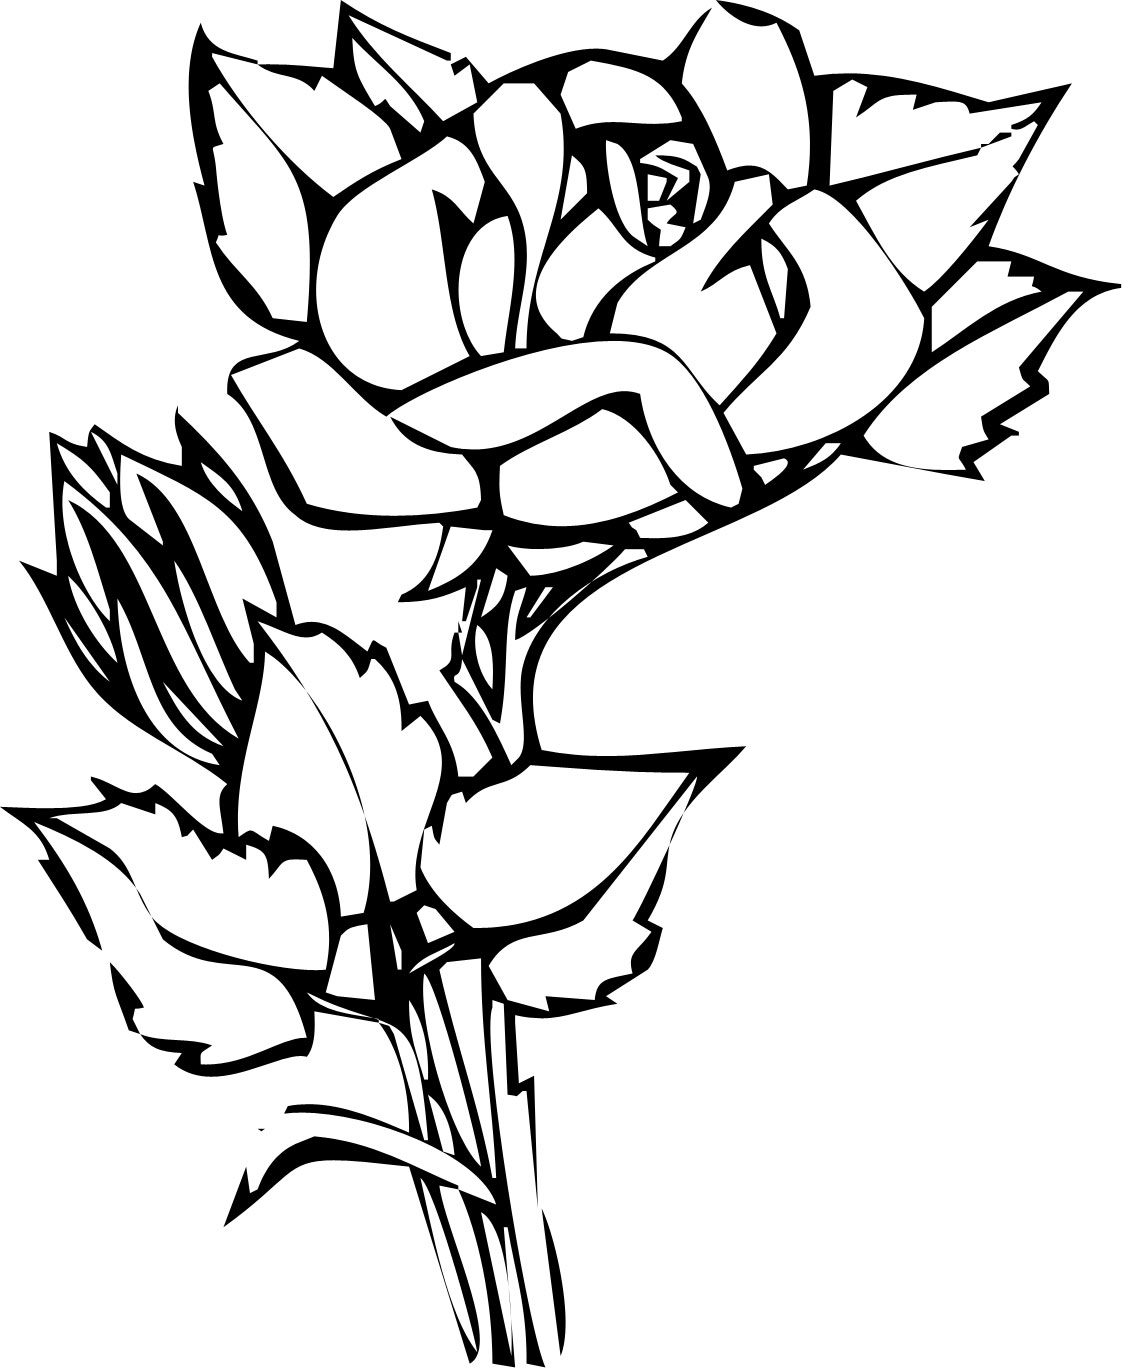 リアルな花のイラスト フリー素材 白黒 モノクロno 2126 白黒 切り絵風